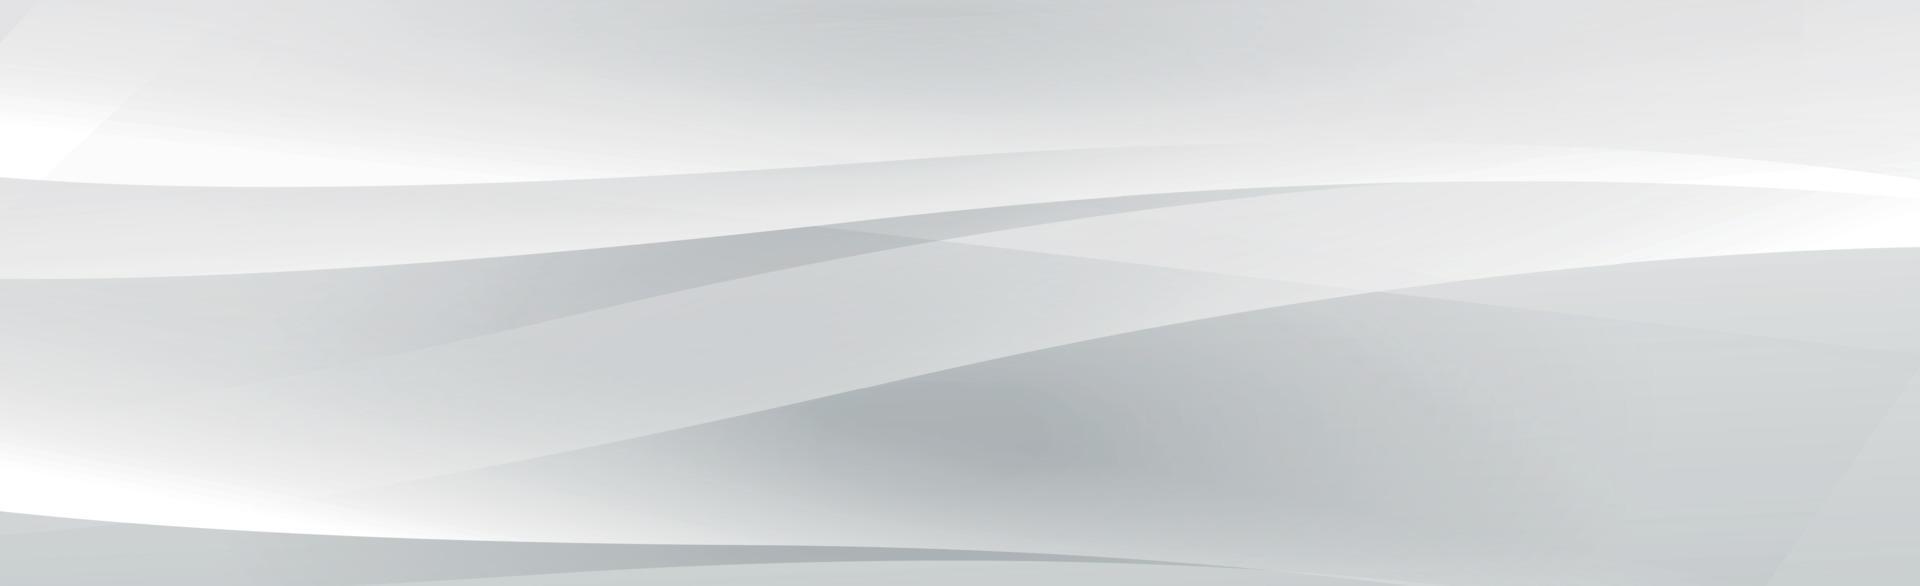 vit vektor panorama bakgrund med vågiga linjer